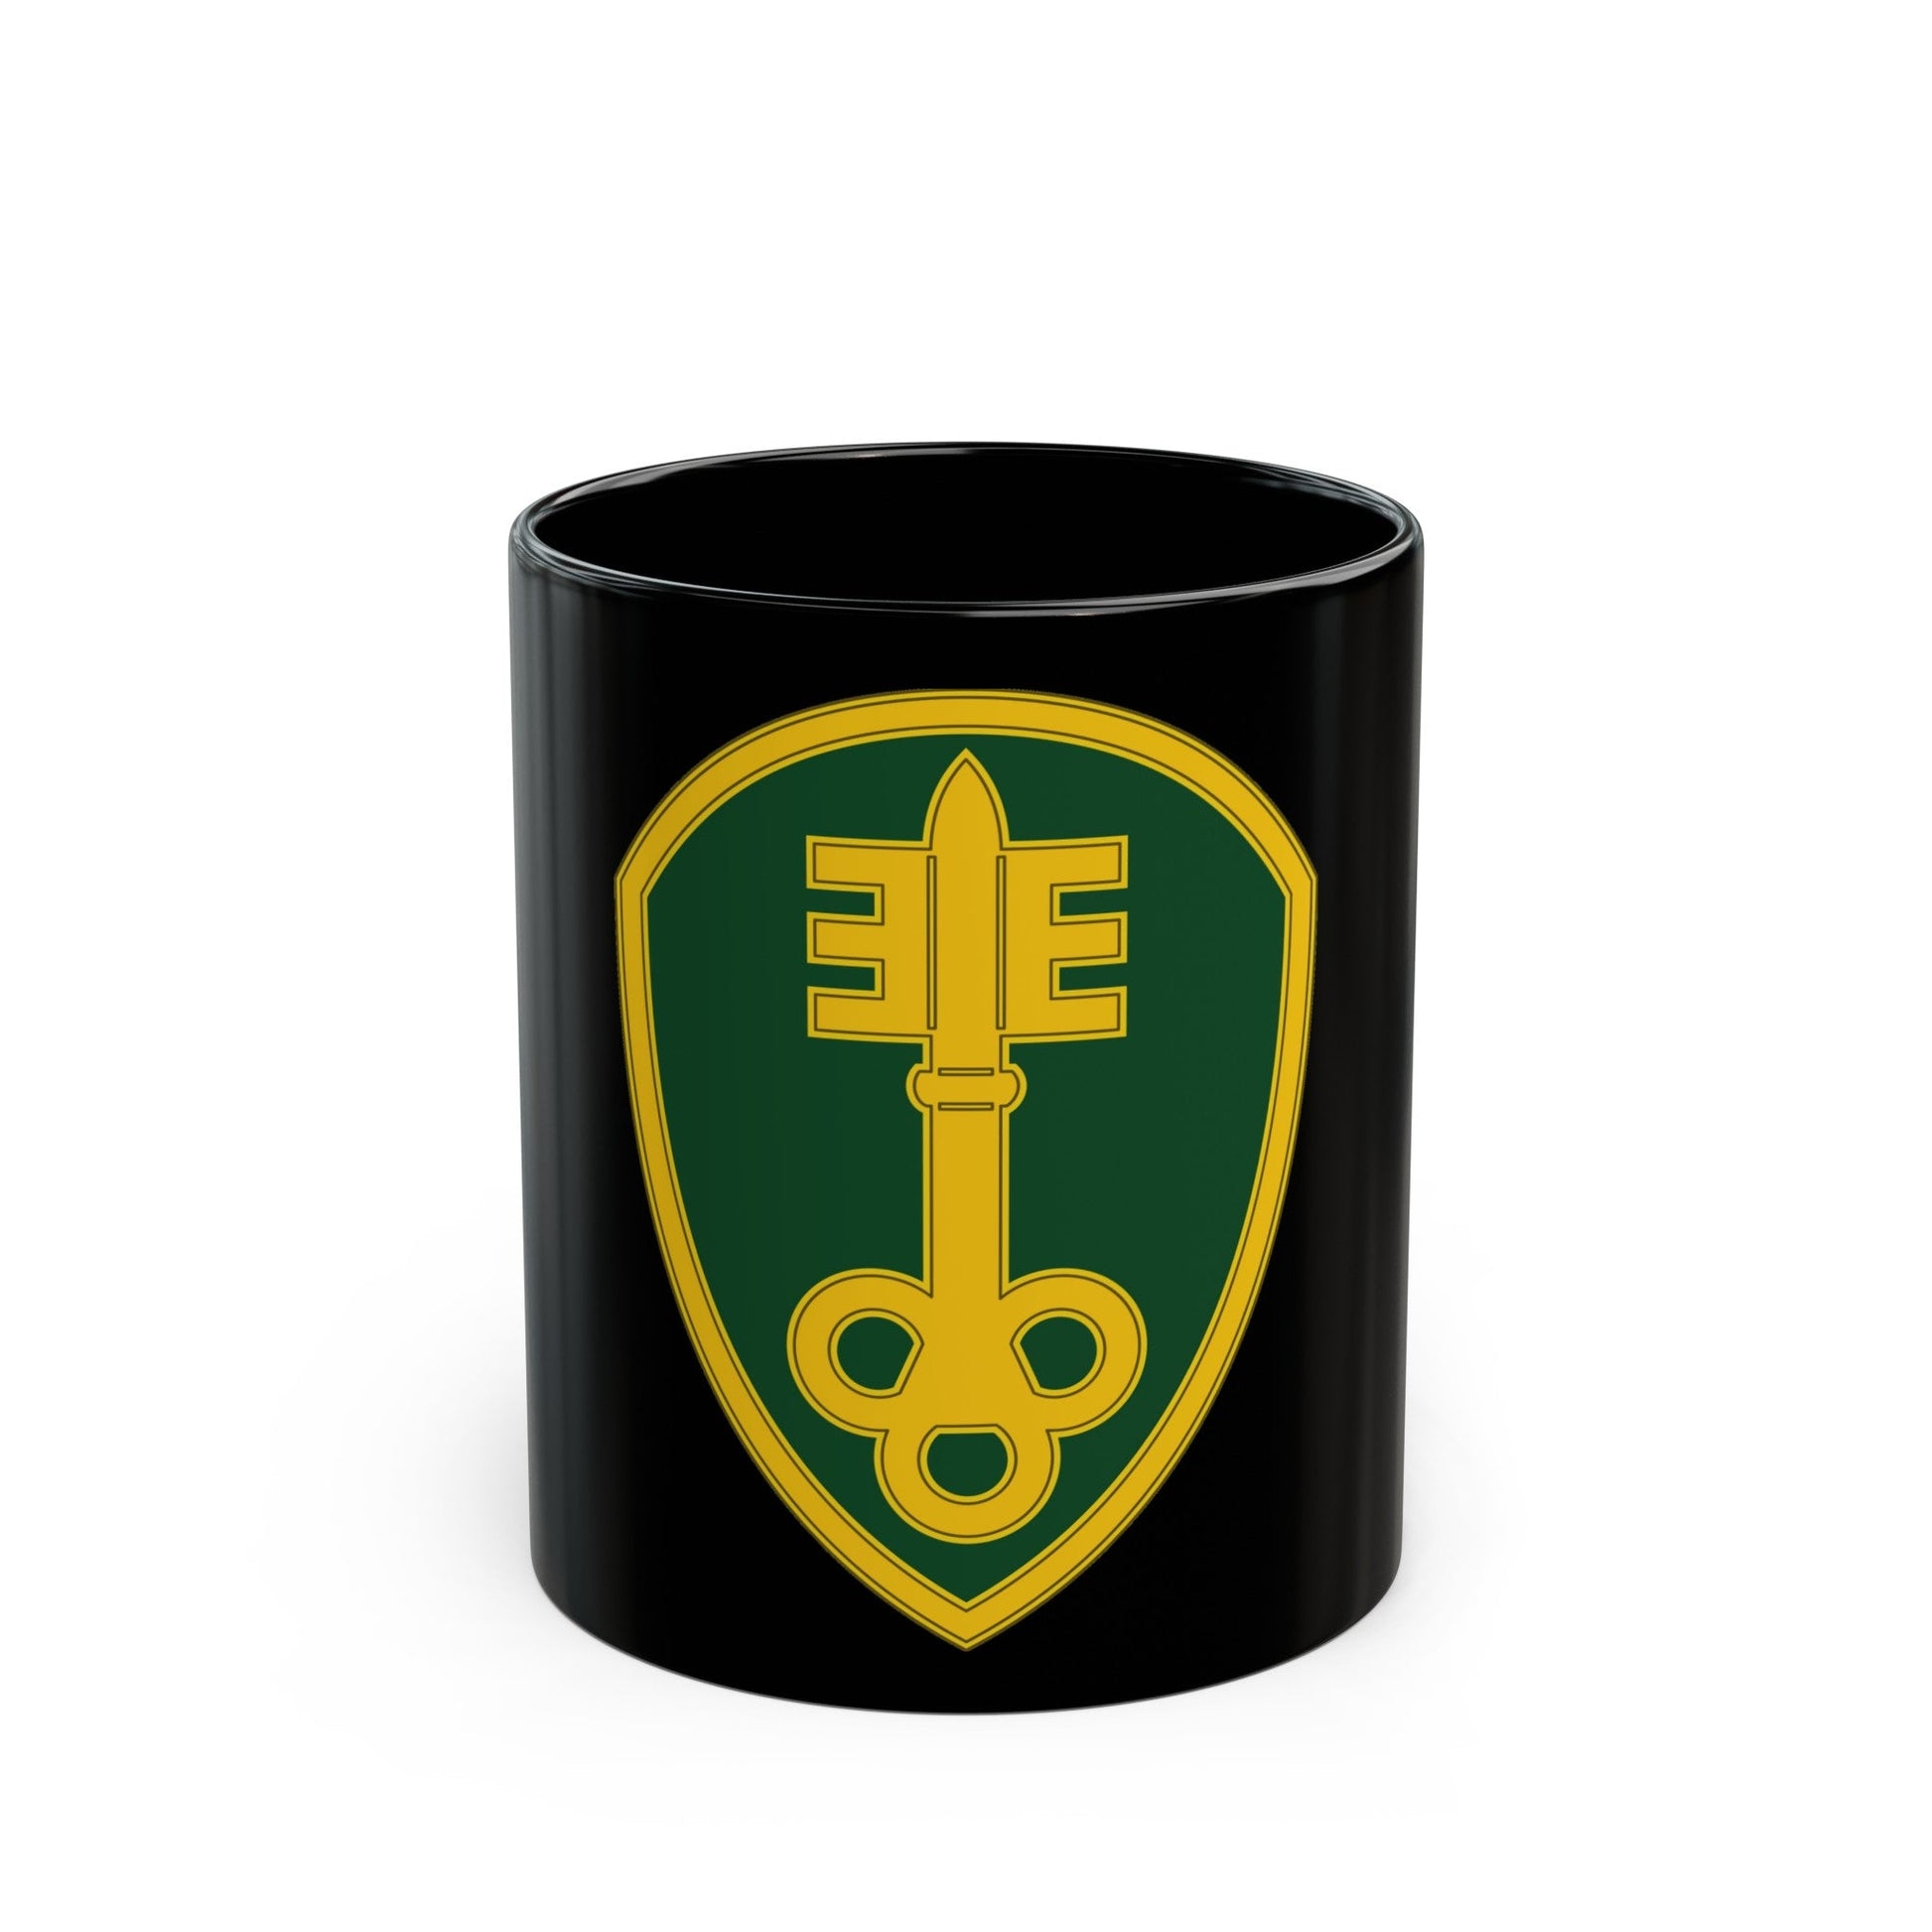 300 Military Police Brigade 3 (U.S. Army) Black Coffee Mug-11oz-The Sticker Space